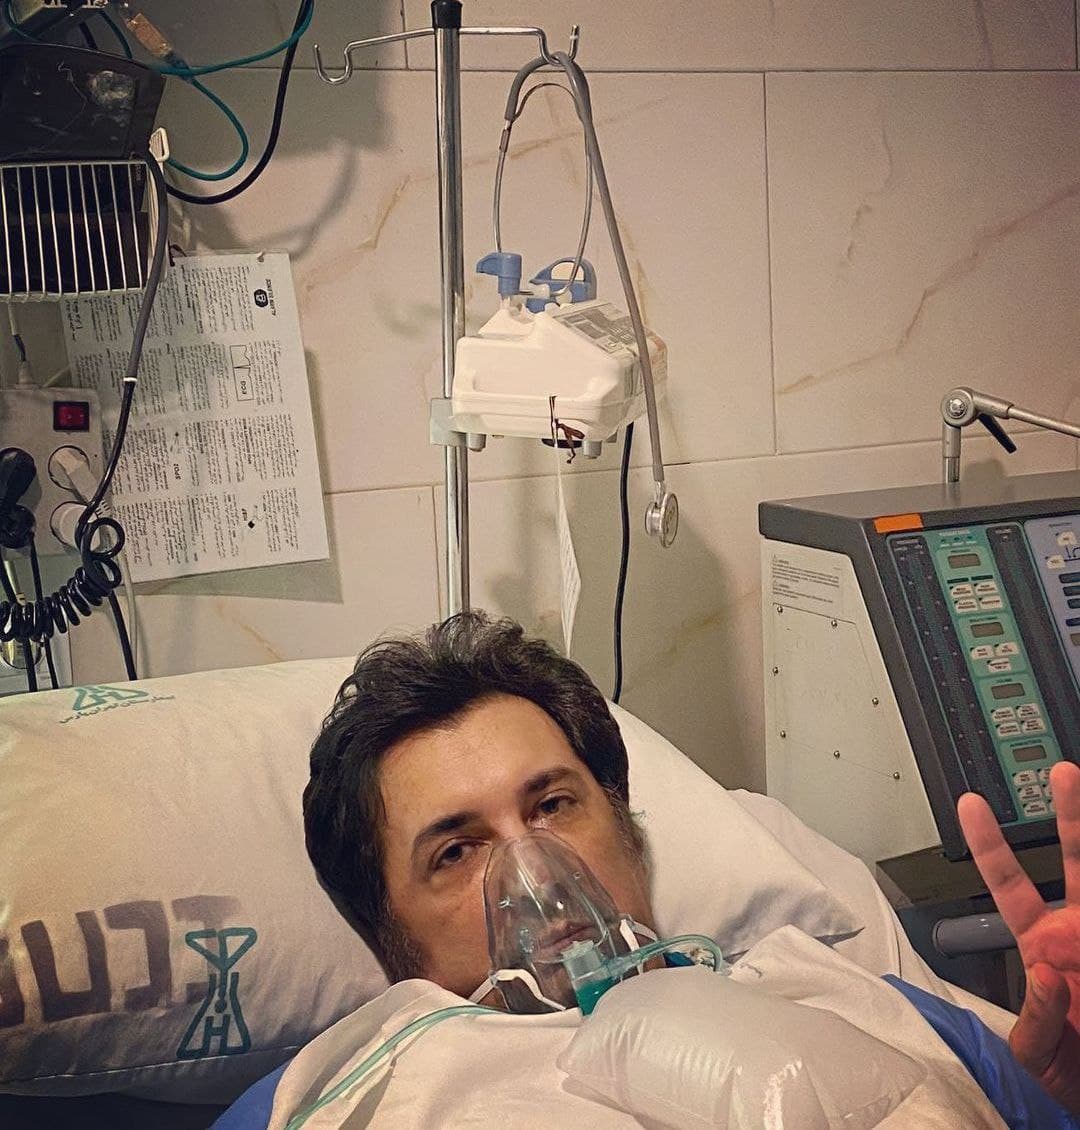 حسام نواب صفوی بازیگر سرشناس سینمای ایران در یک پست اینستاگرامی از بستری شدن خود به دلیل ابتلا به ویروس کرونا و درگیر شدن ریه اش خبر داد